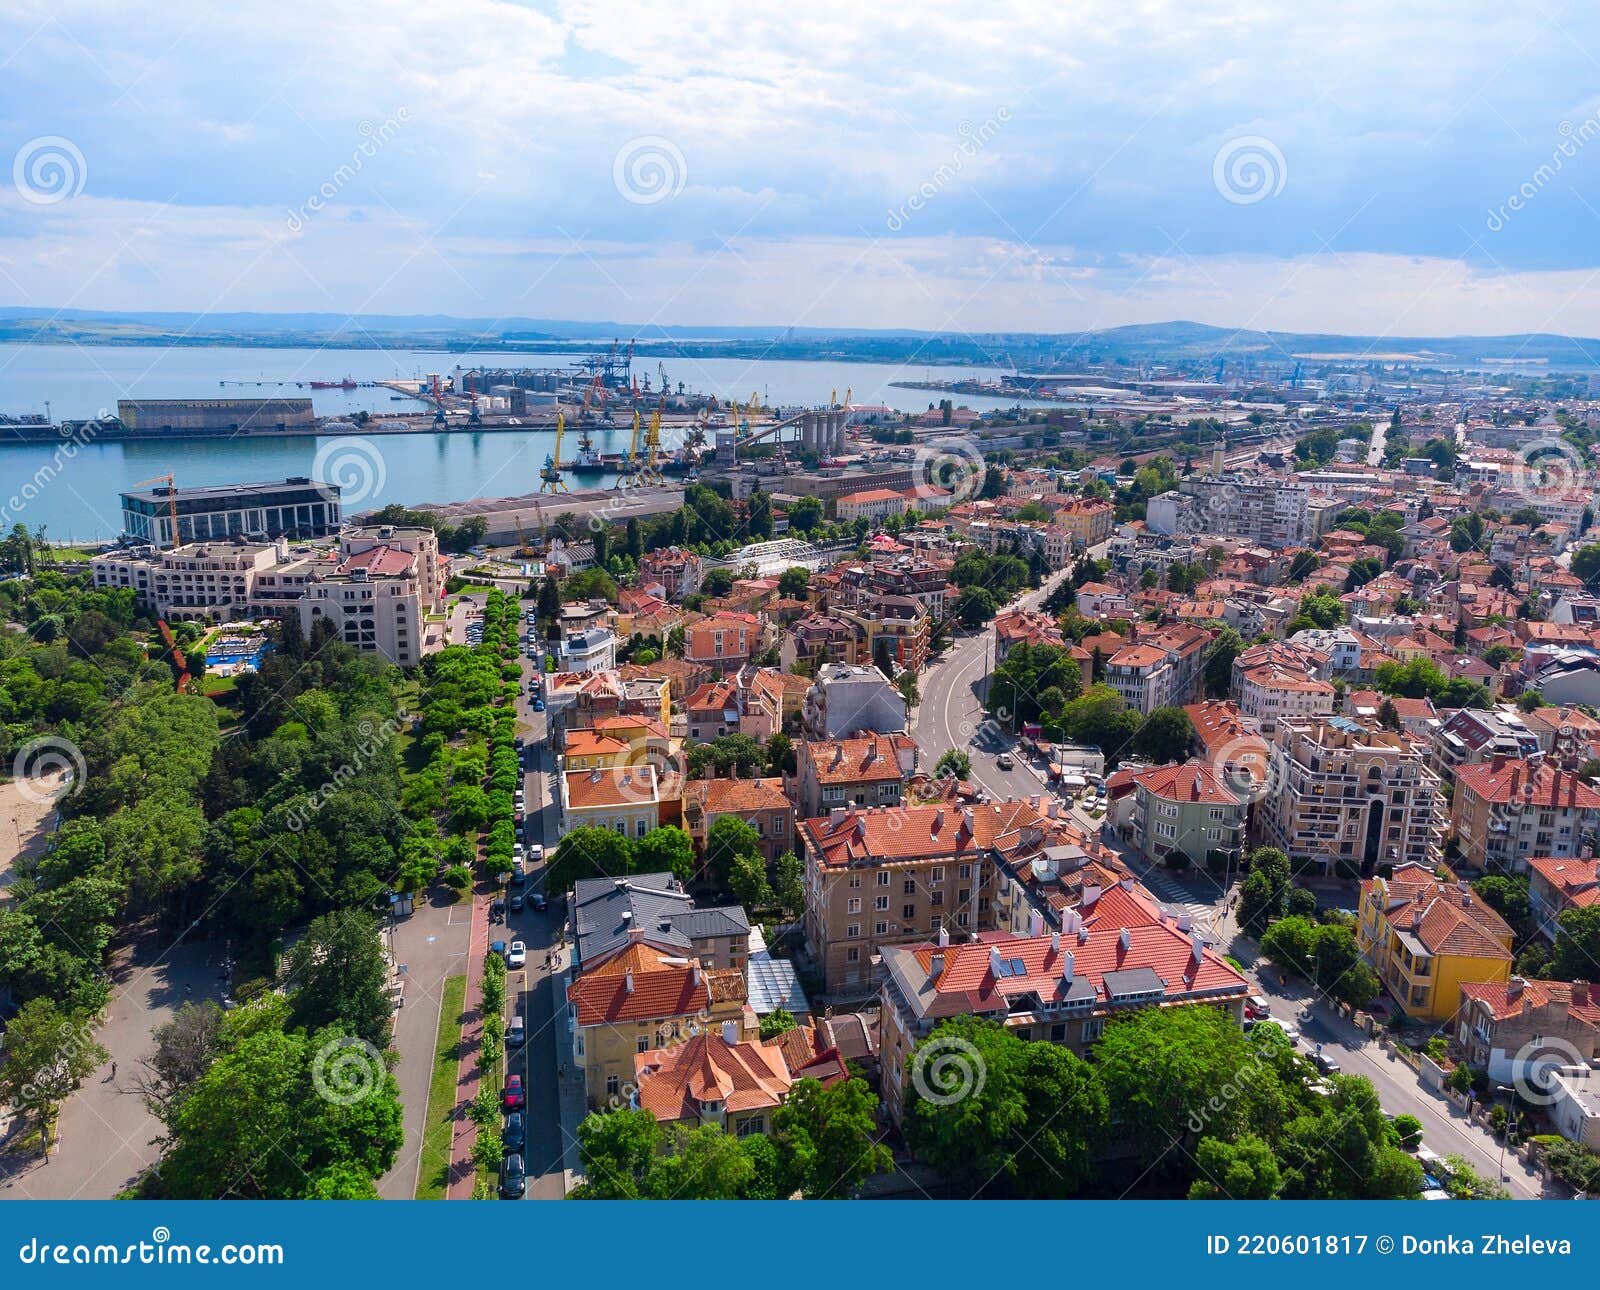 Город порт в болгарии где купить недвижимость у моря